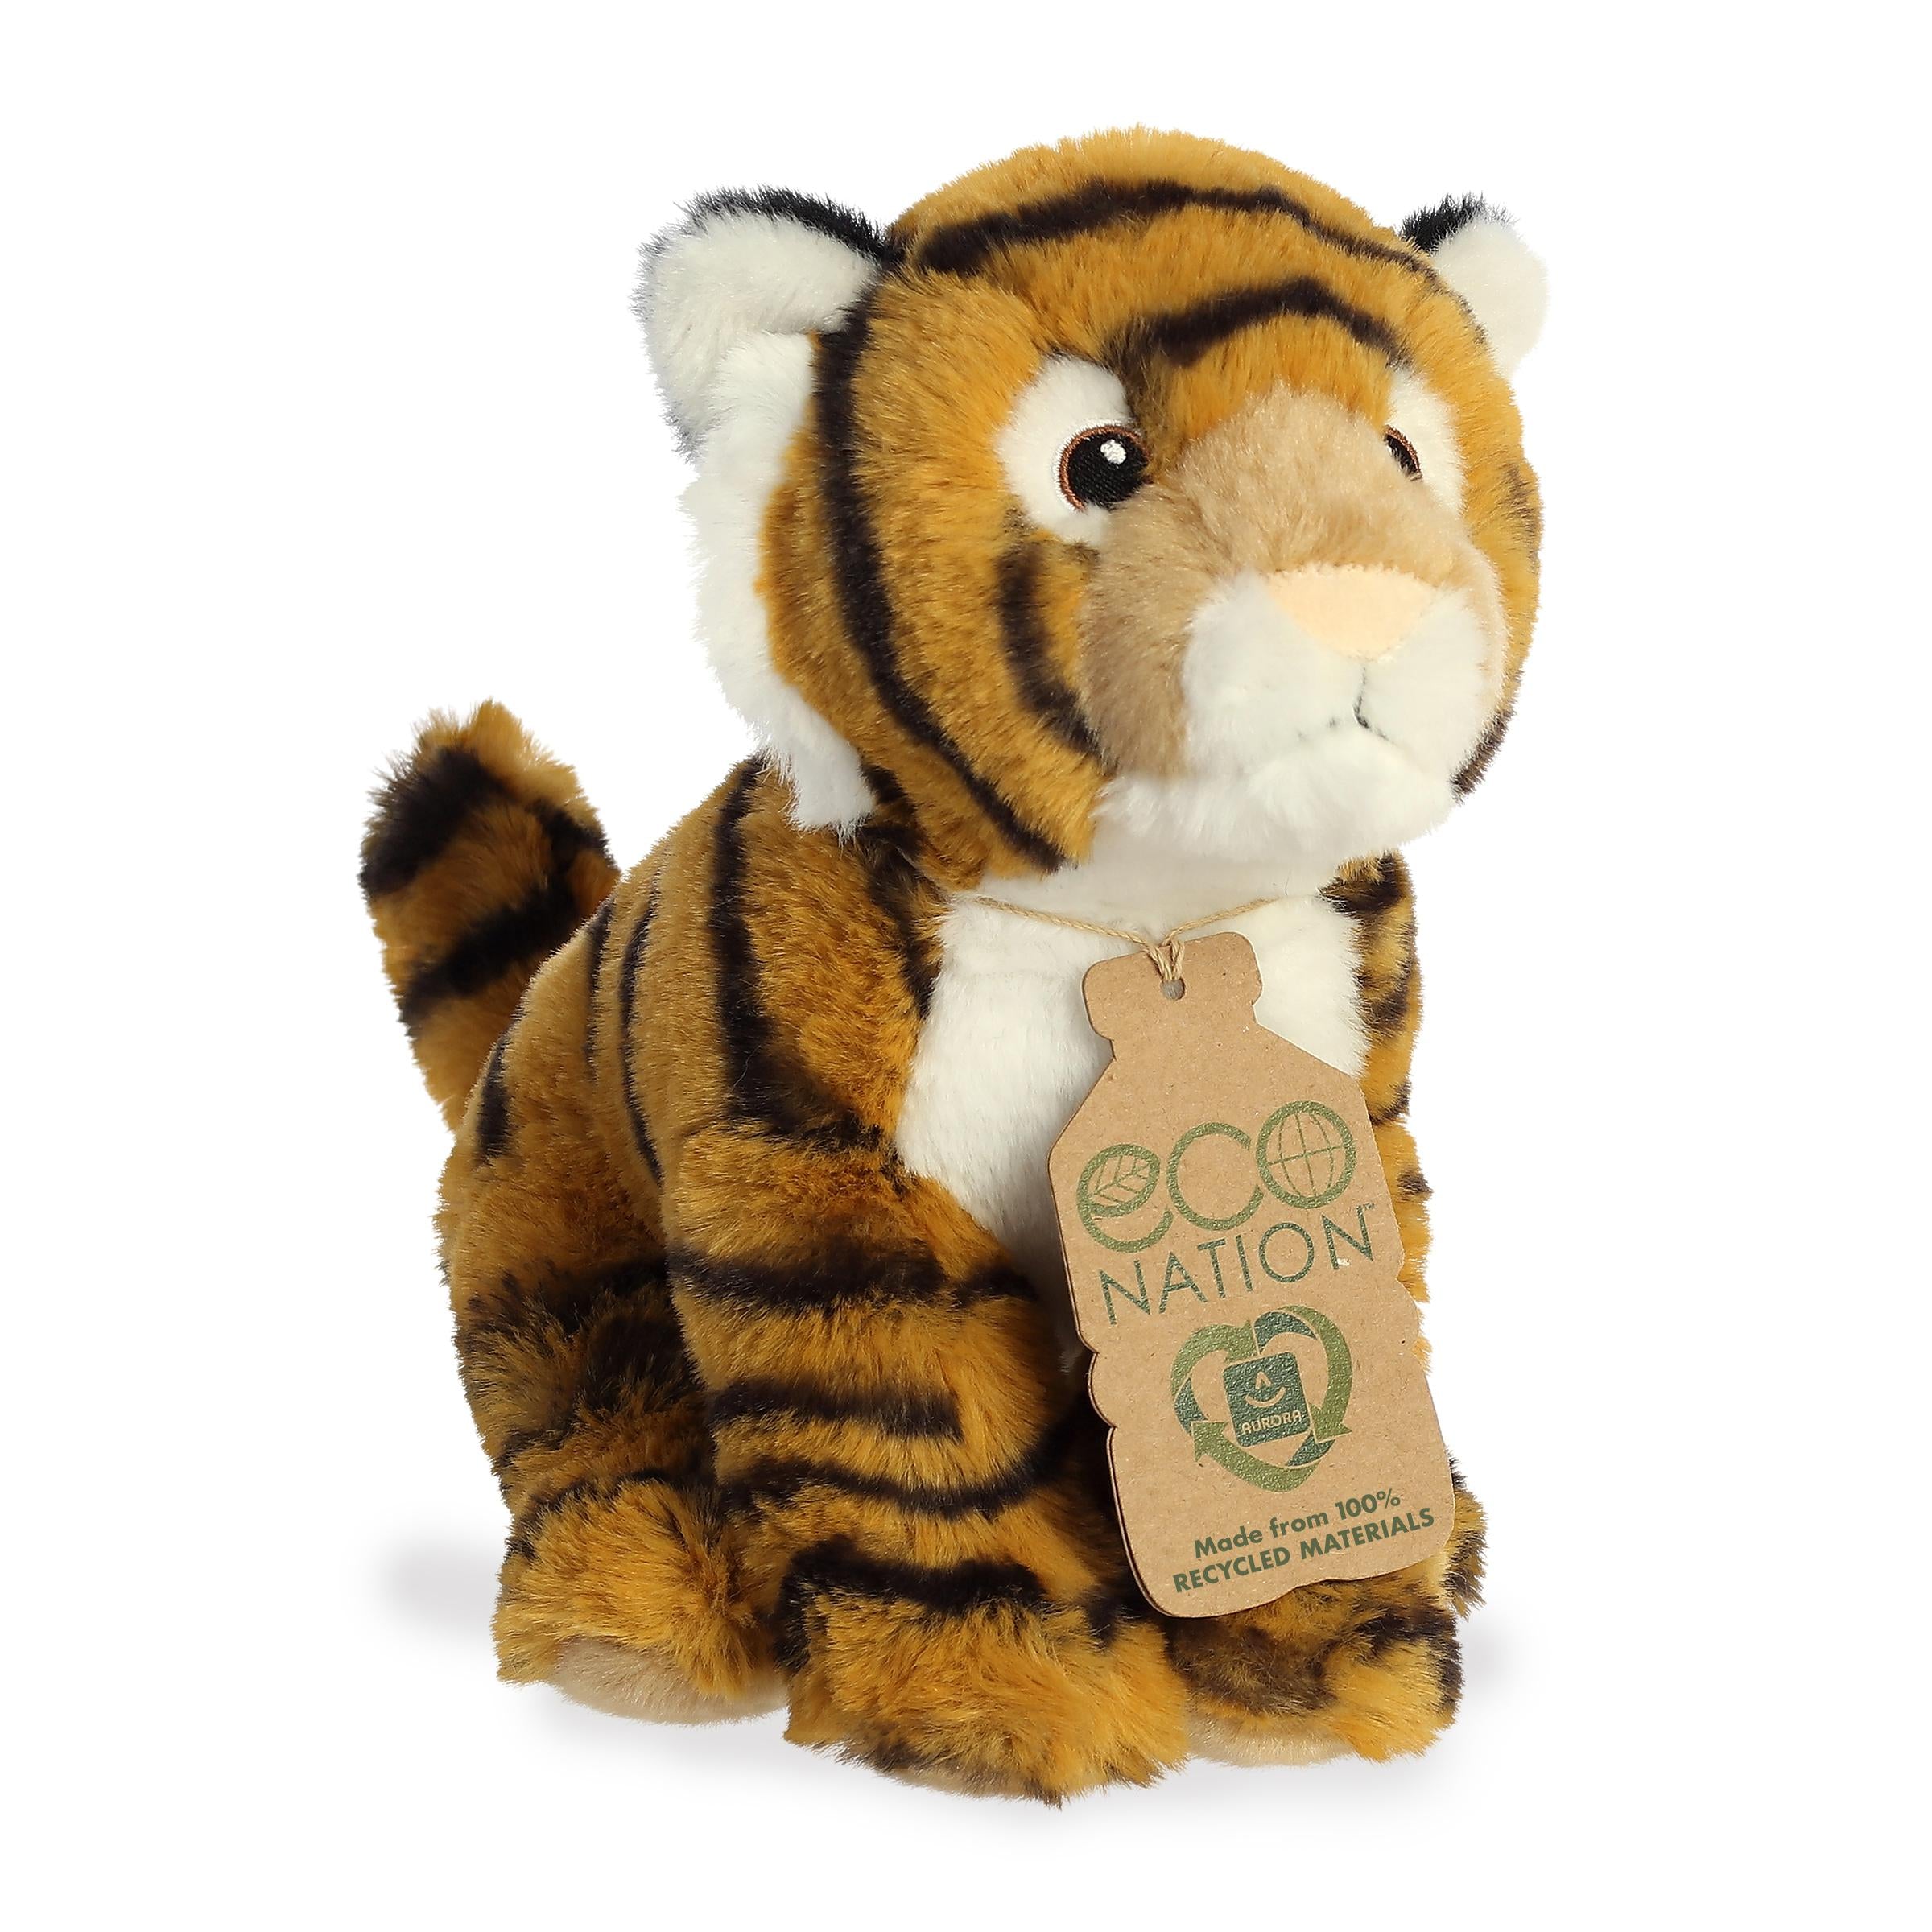 Bengal Tiger Ã¢â‚¬â€œ Wild Eco-Nation Stuffed Animals Ã¢â‚¬â€œ